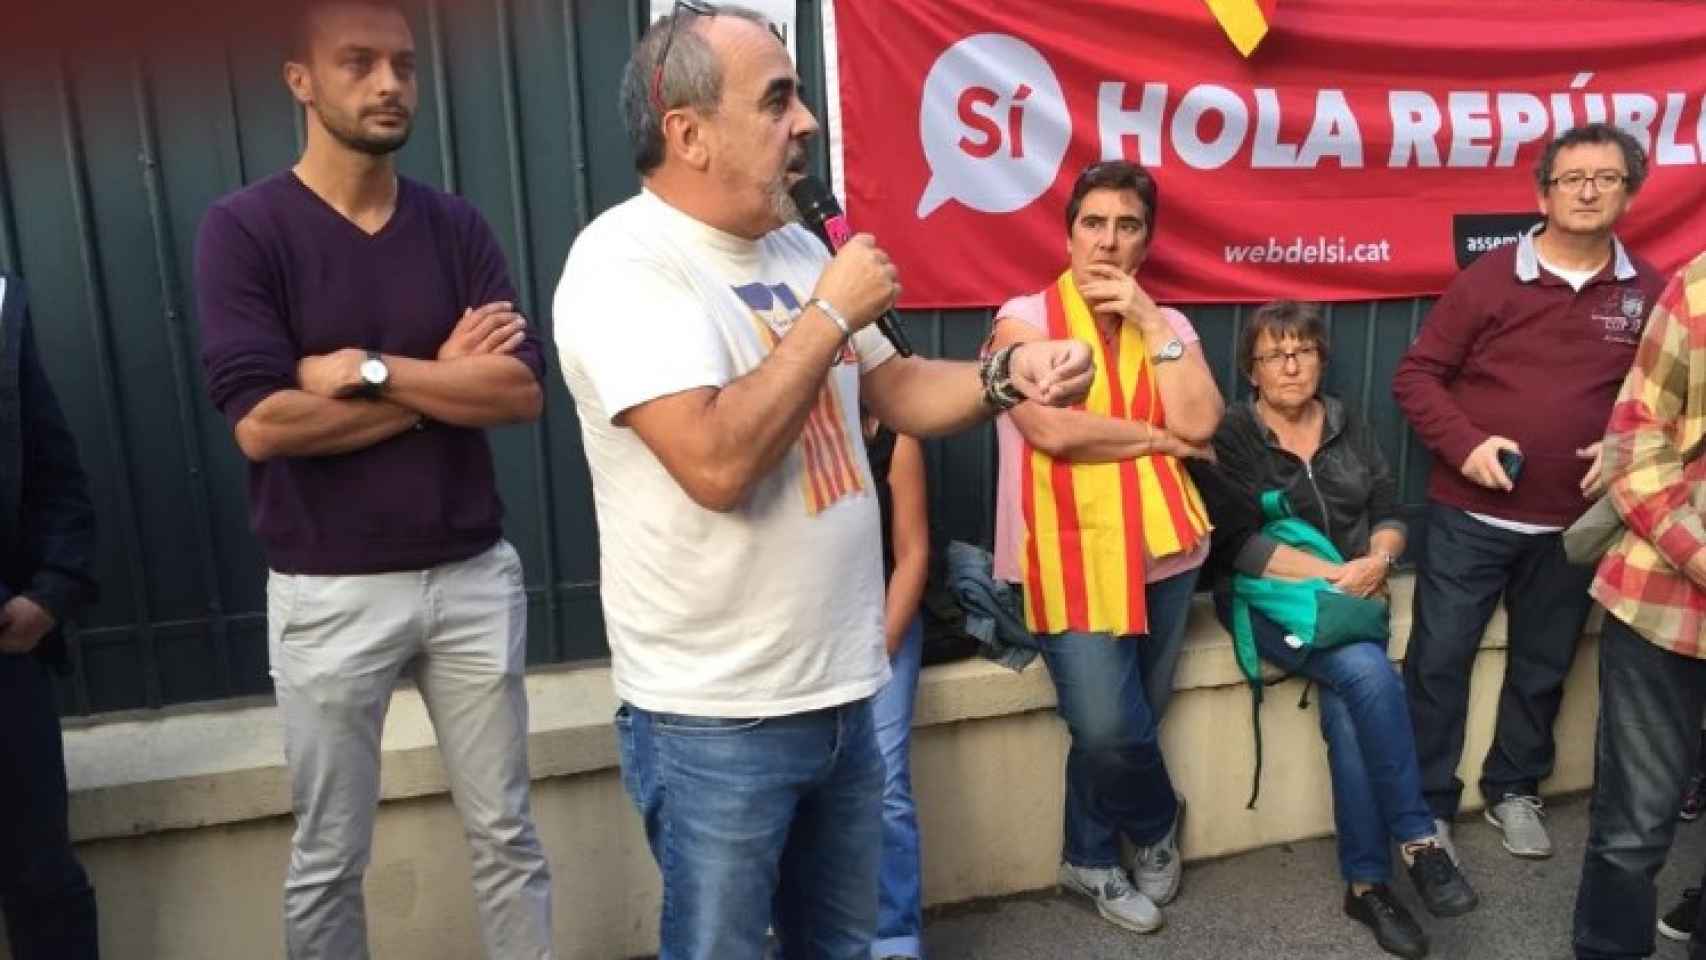 Nicolas Garcia en un acto en Perpiñán a favor del referéndum de independencia, el 2 de octubre de 2017 en Perpiñán